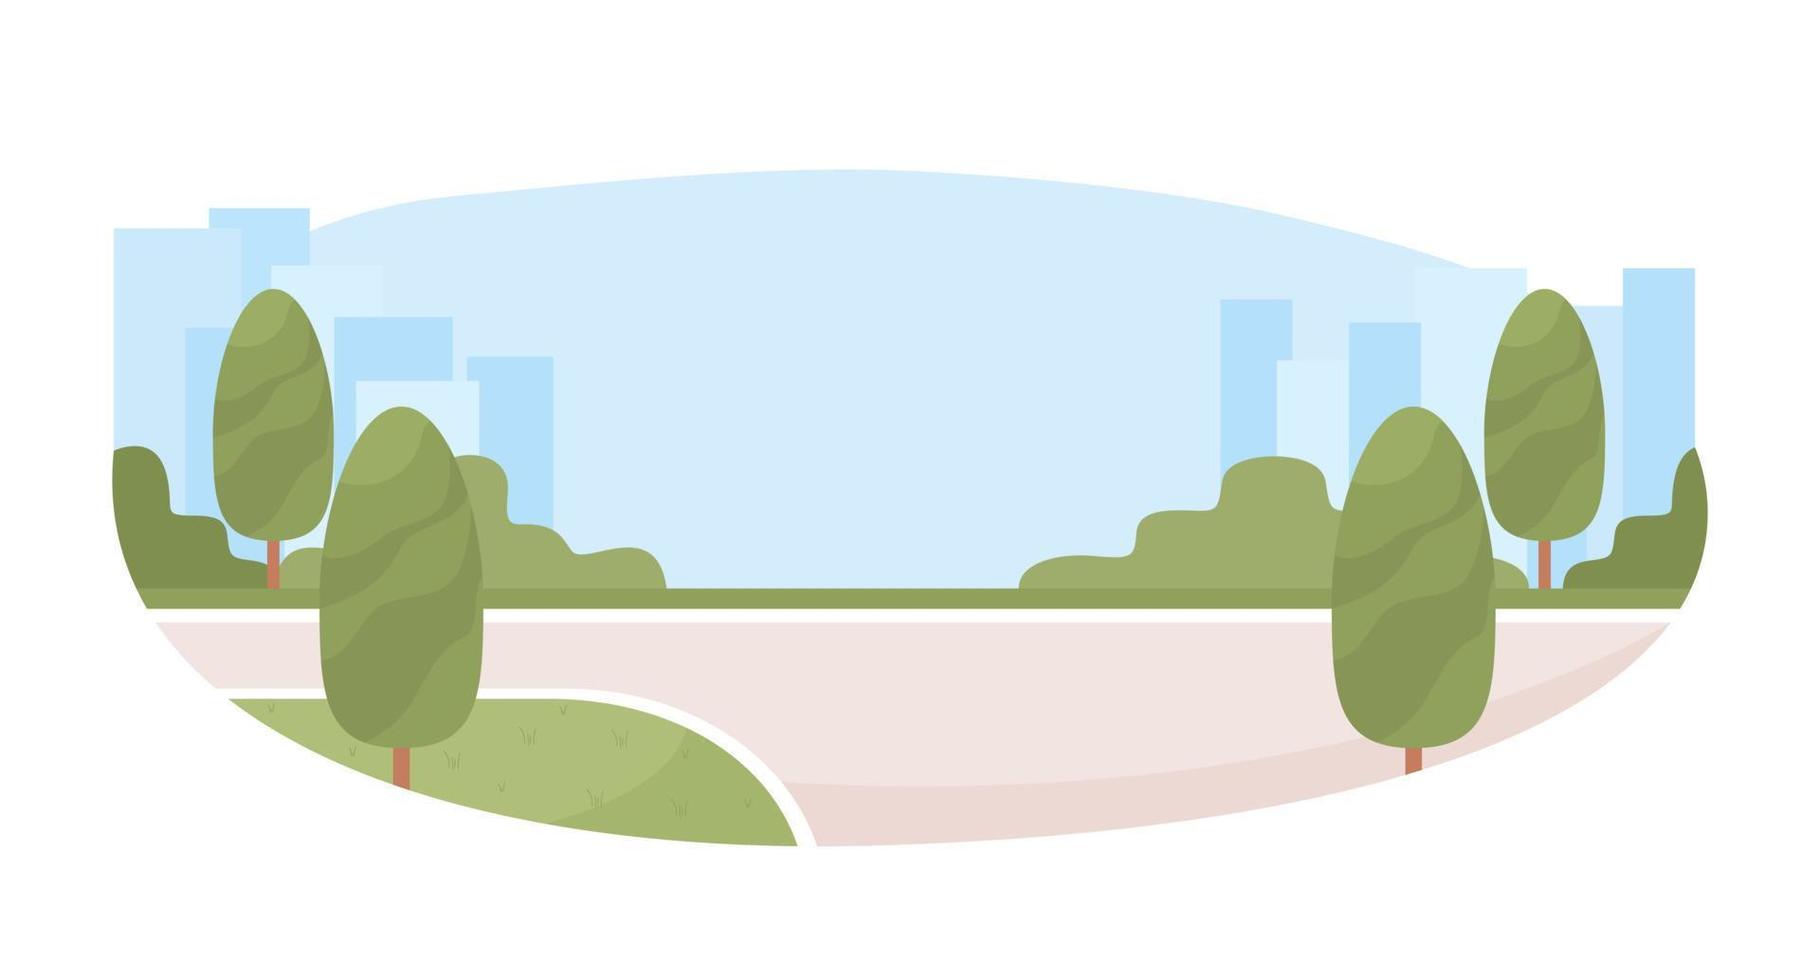 infraestructura 2d vector ilustración aislada. árboles en la carretera objetos planos sobre fondo de dibujos animados. edificios urbanos y calles coloridas escenas editables para móvil, sitio web, presentación